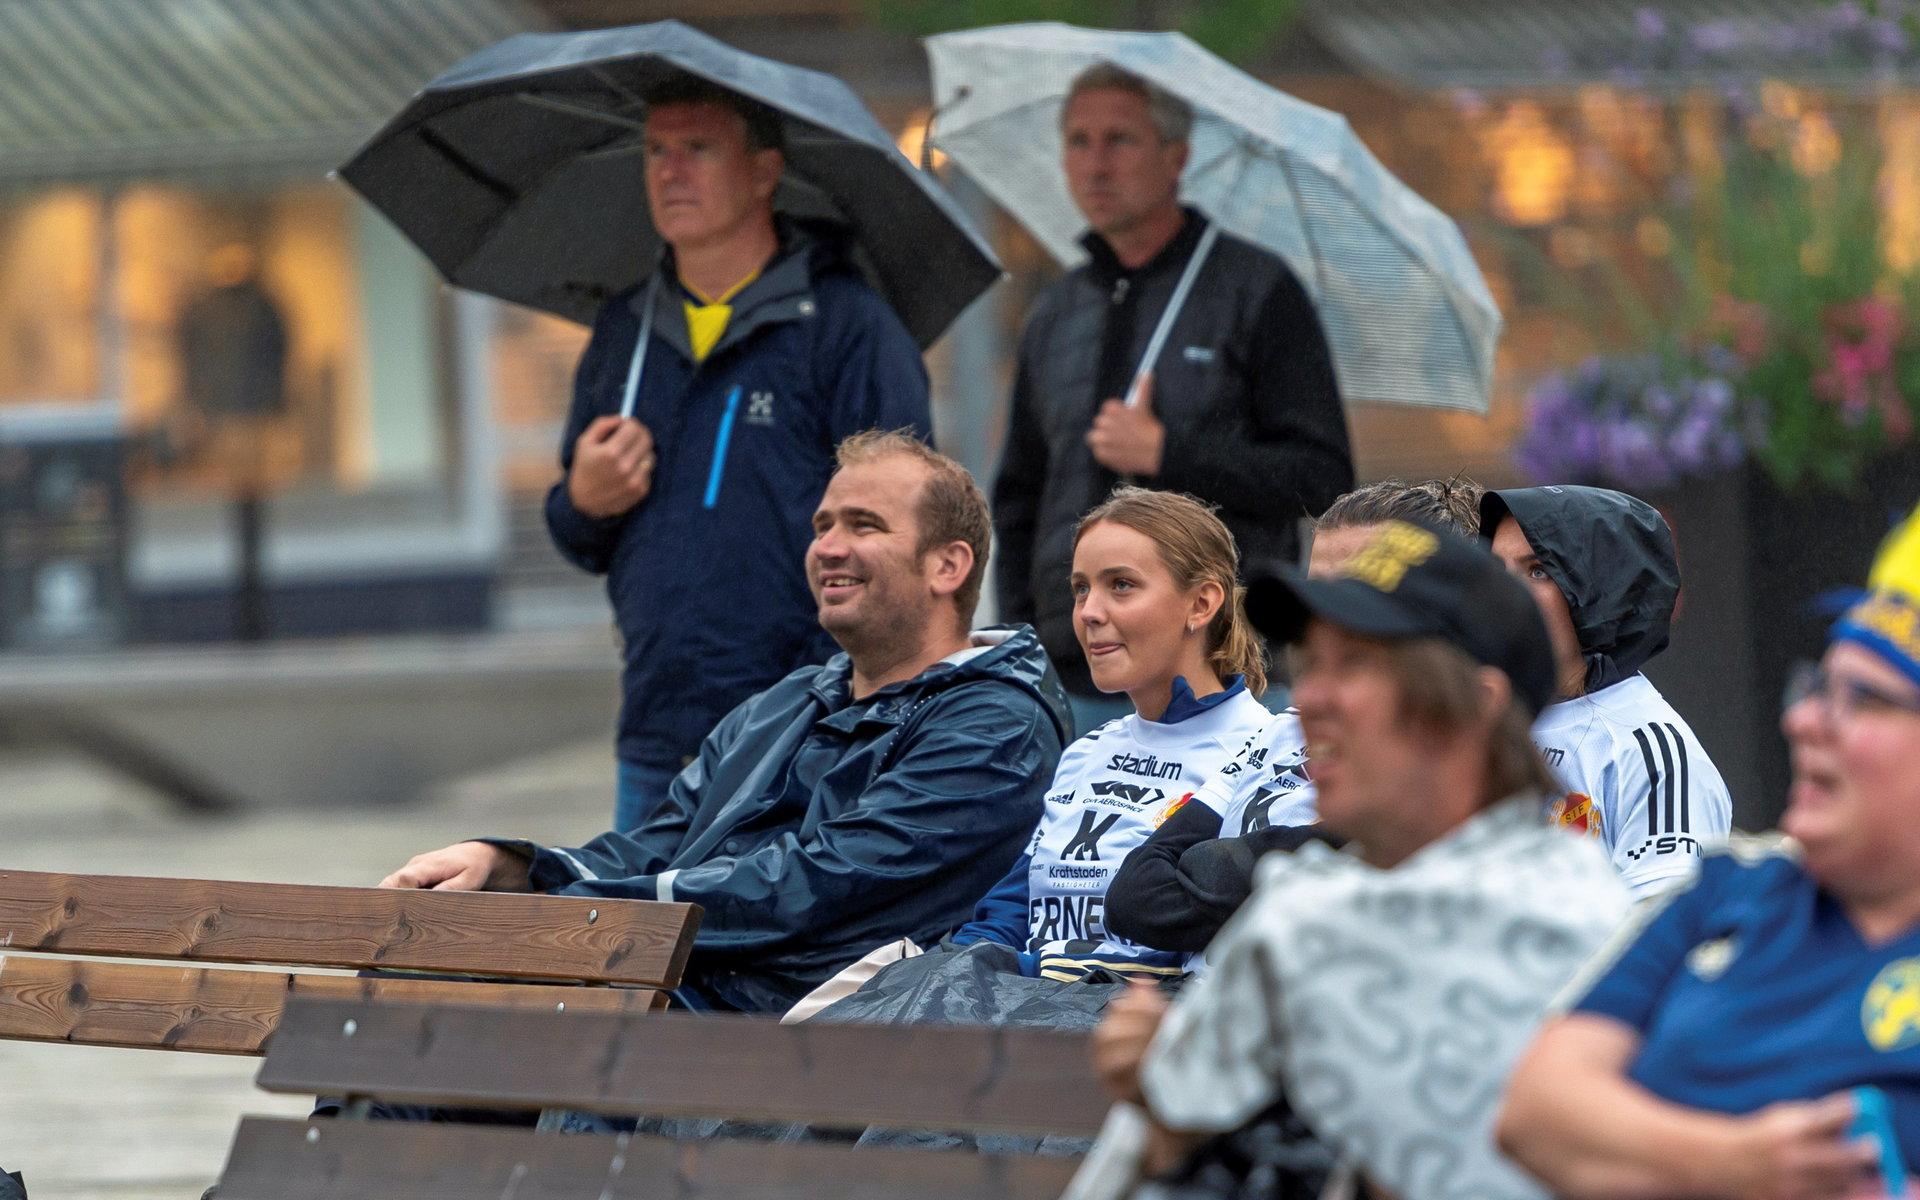 Fotbollsfest på Drottningtorget när Sverige spelar EM-kvartsfinal i fotboll under paraplyer.